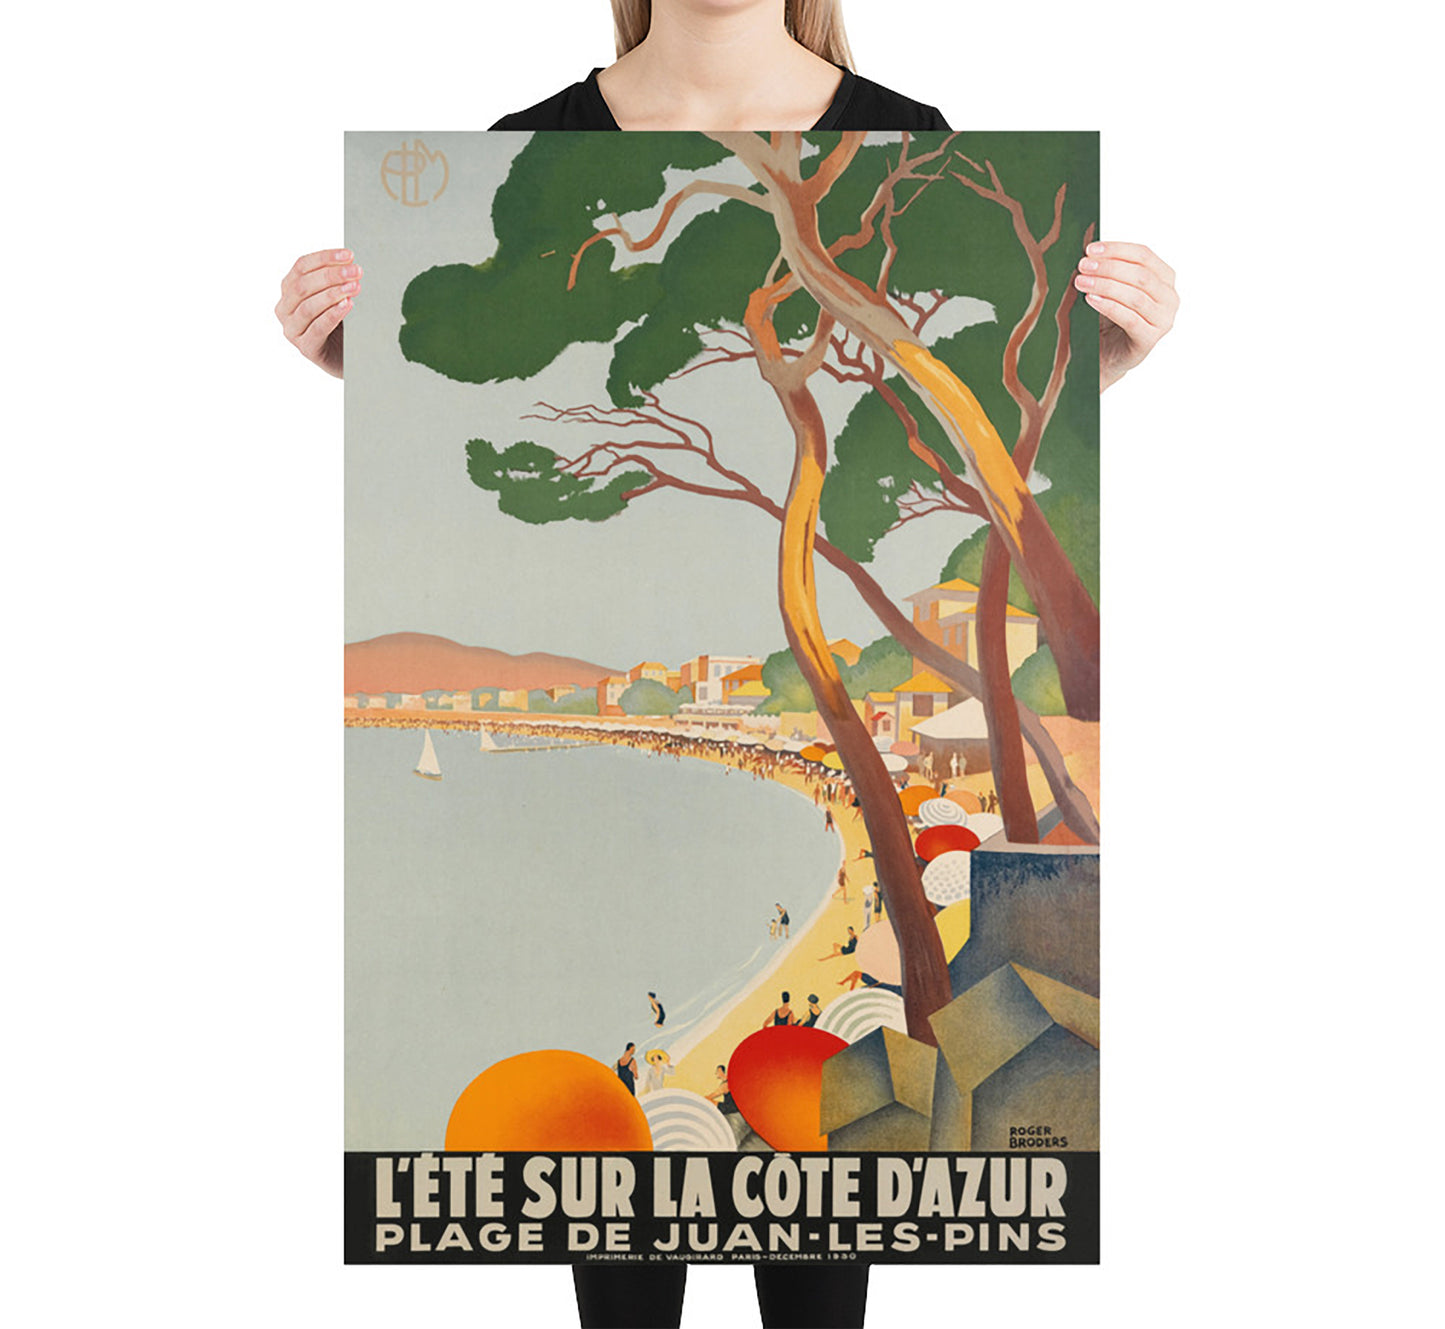 Cote d'Azur, France Vintage Travel Poster by Roger Broders, 1930s.